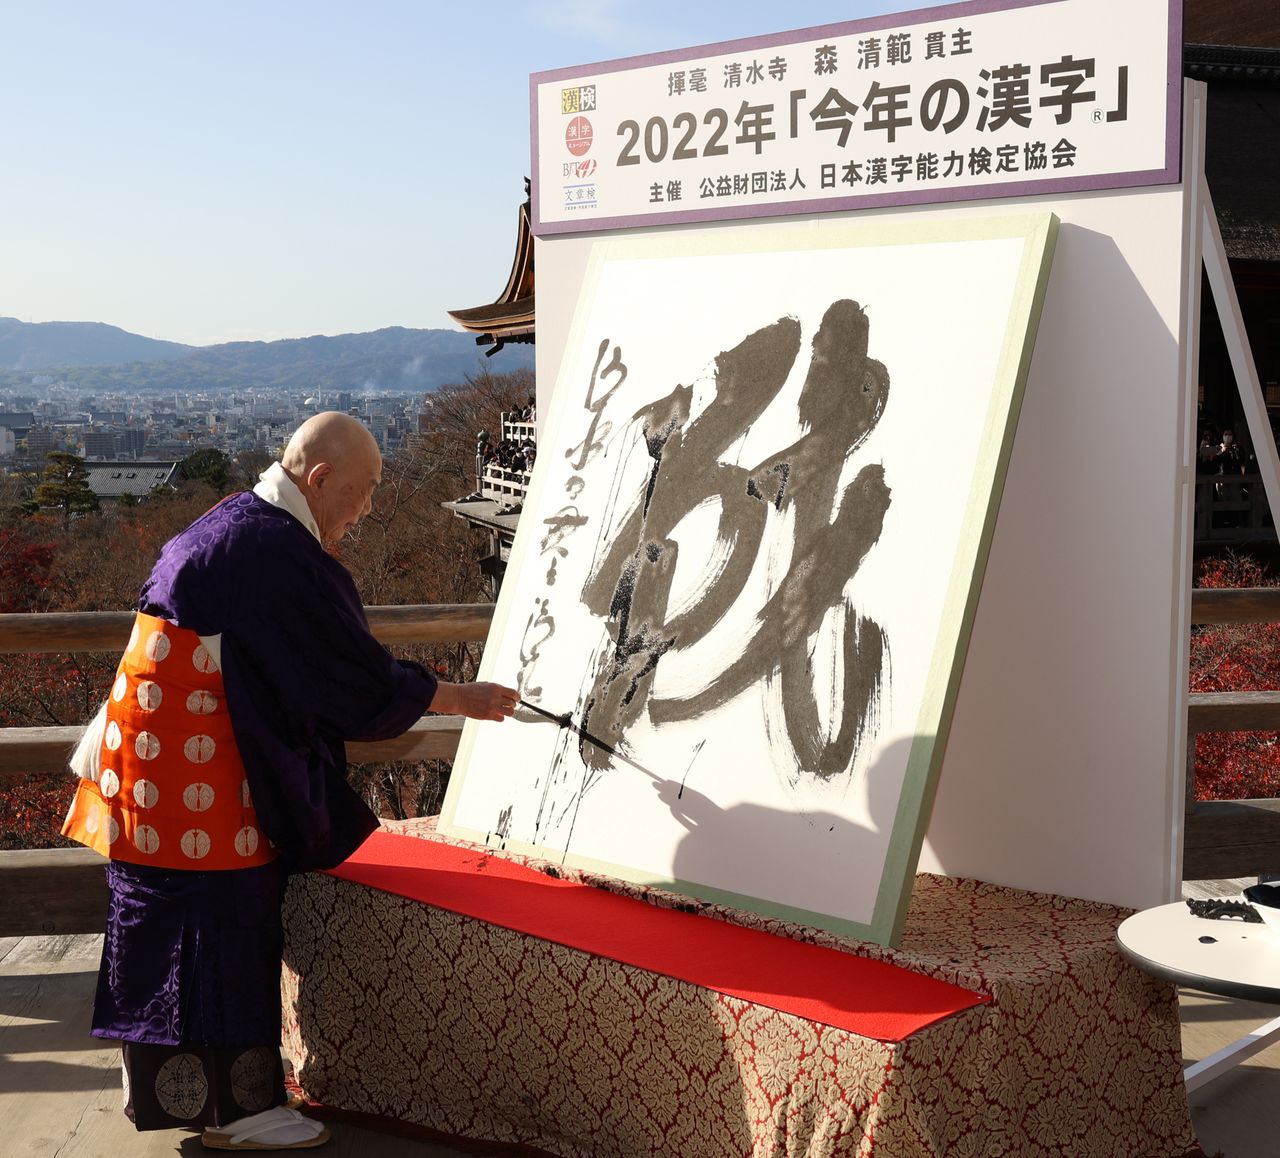 موري سيهان، الكاهن الأكبر في معبد كيوميزوديرا، يكتب مقطع الكانجي (سين) باعتباره كانجي العام لسنة 2022 في الثاني عشر من ديسمبر/ كانون الأول في المعبد بمدينة كيوتو. جيجي برس.